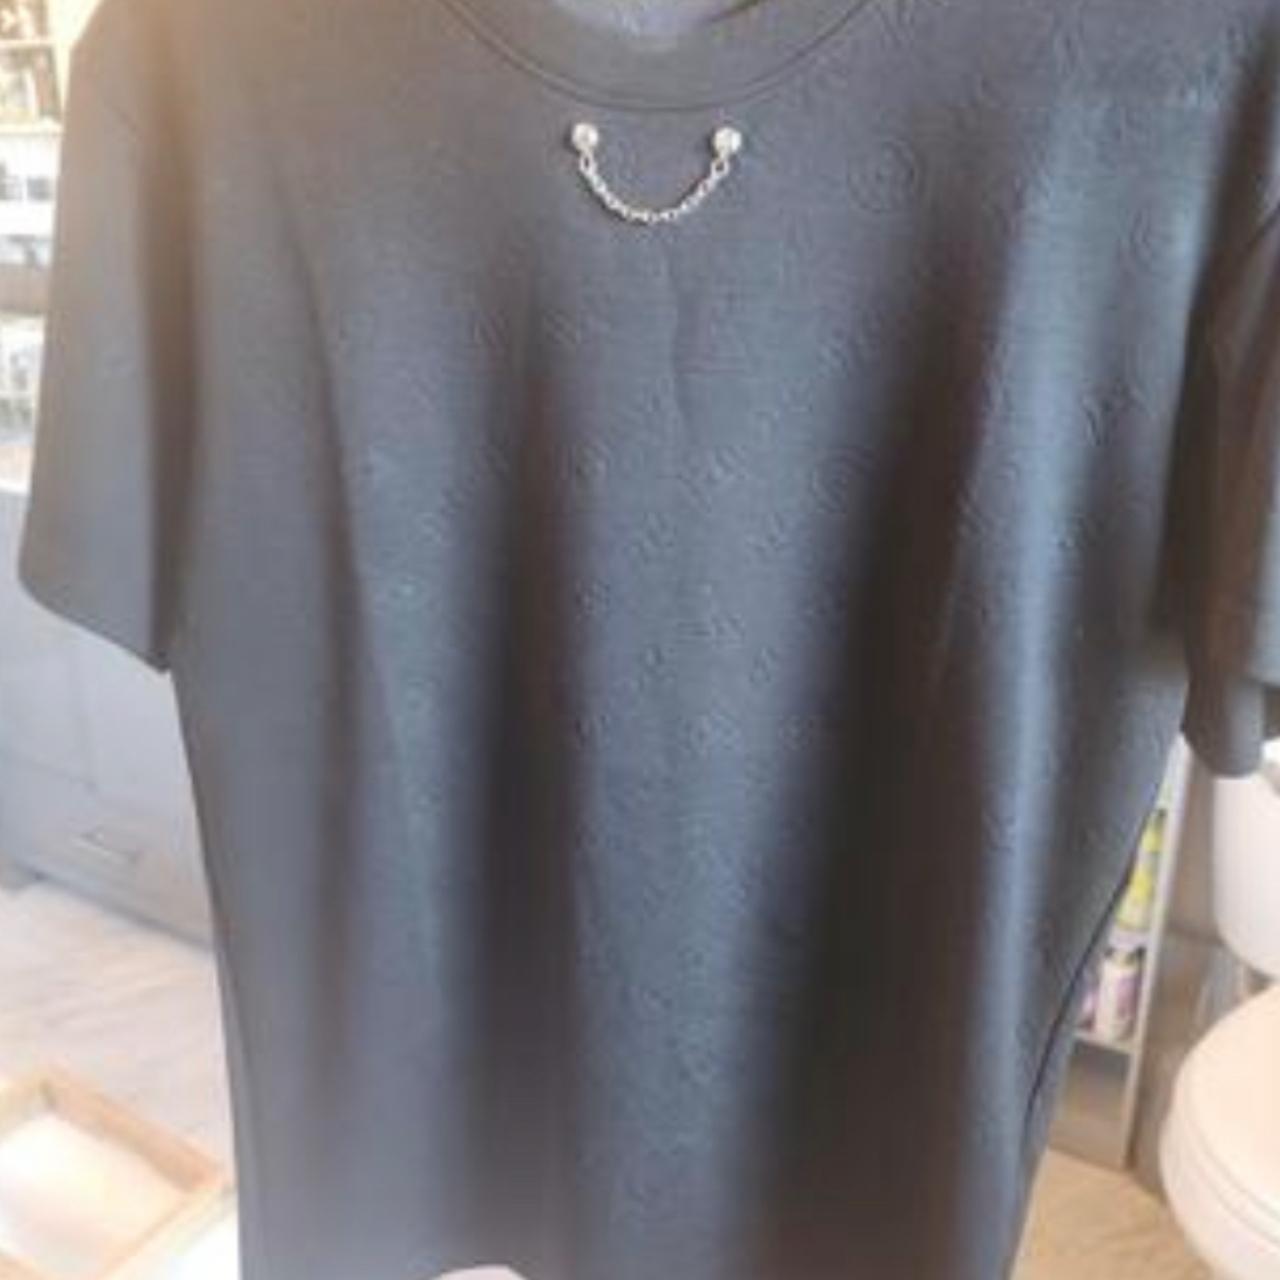 Louis Vuitton casual t-shirt mens short sleeve great - Depop